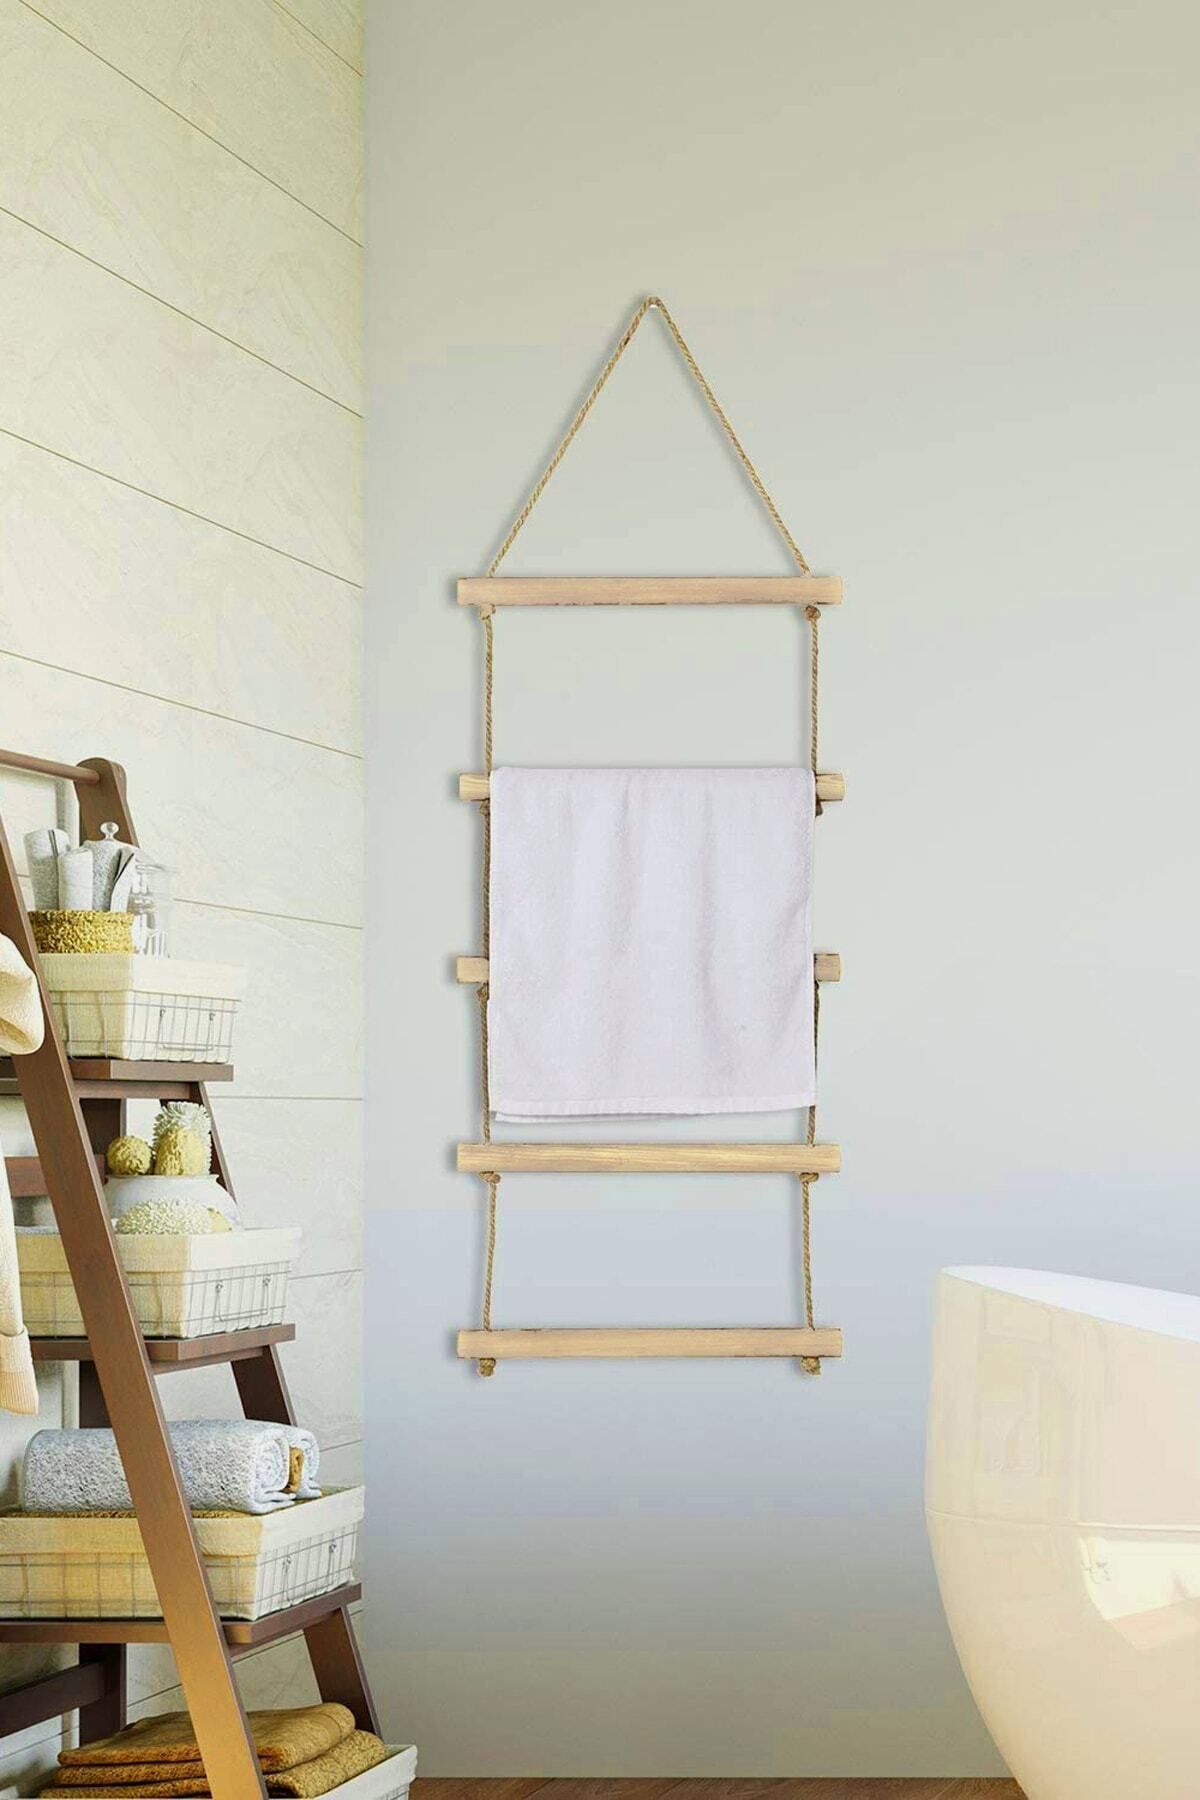 Bundera Towel Jüt Merdiven 5 Katlı Ahşap Banyo Mutfak Havlu Askısı Dekoratif Halat Havluluk